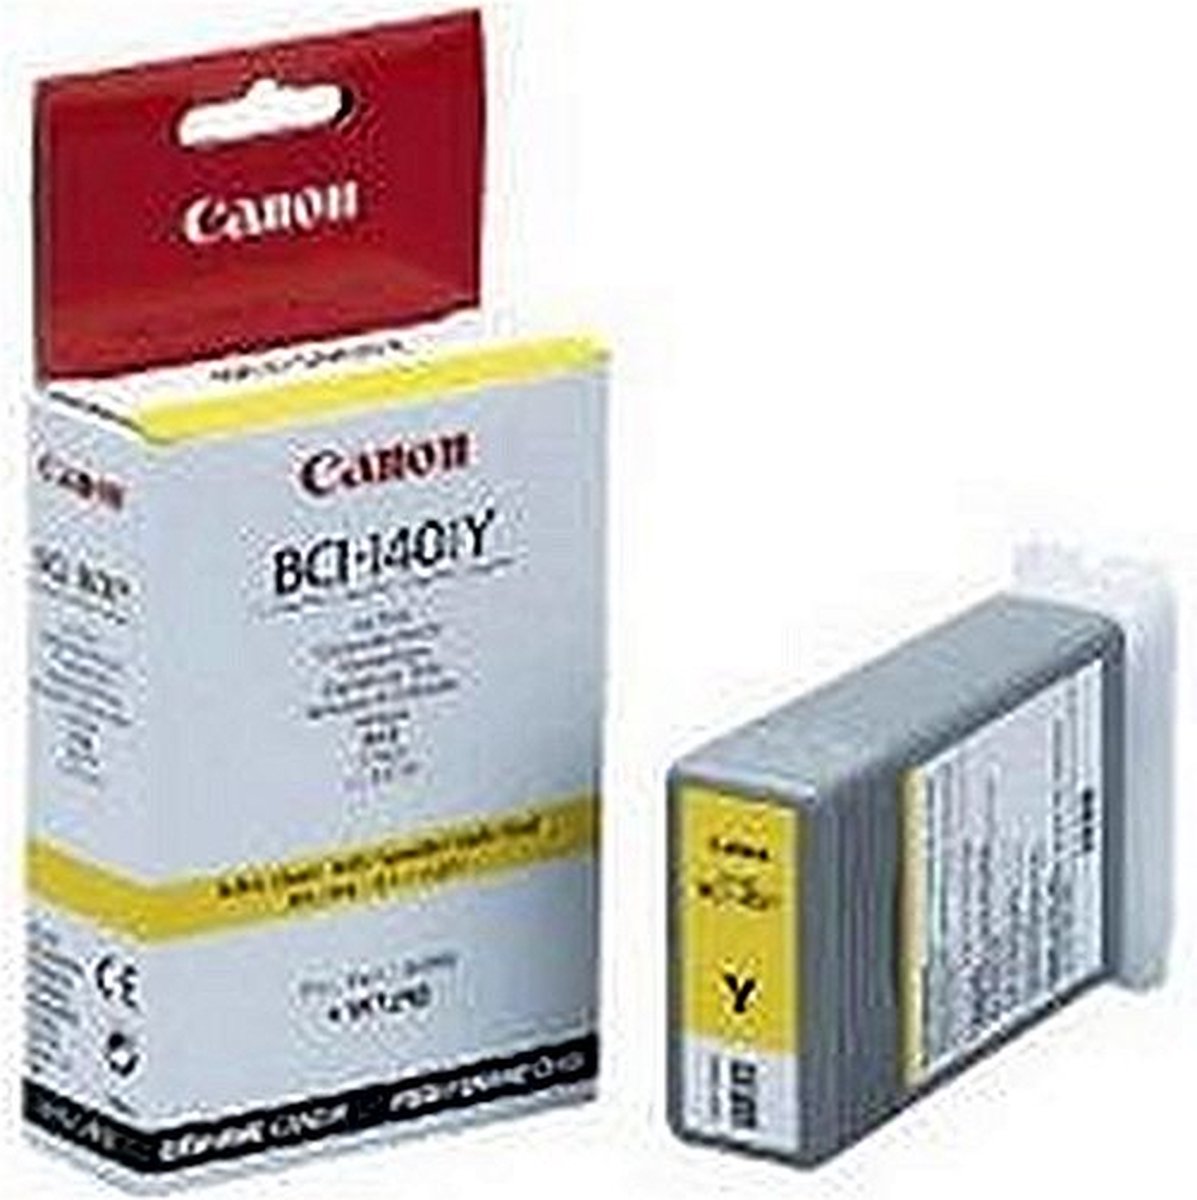 Canon Inkcartridge BCI-1401Y - yellow